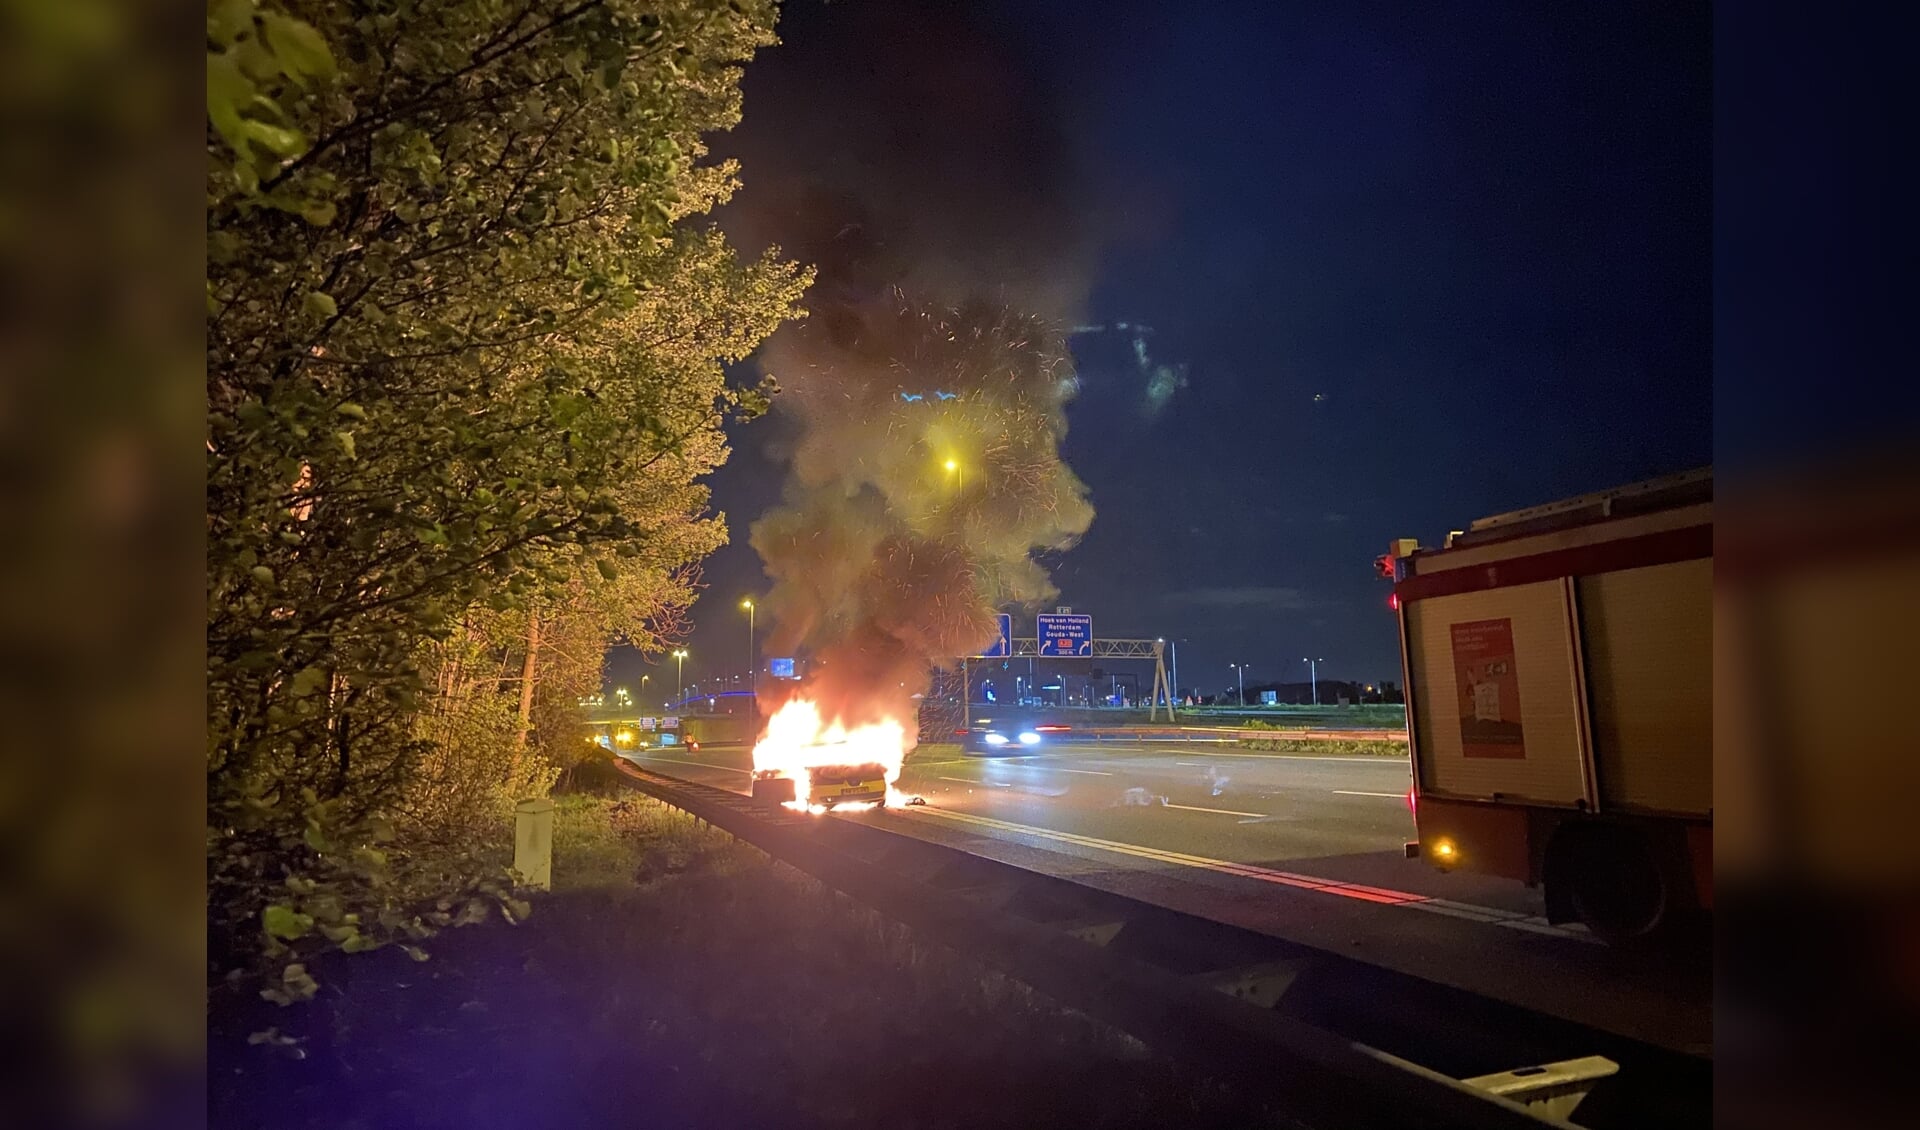 De brandweer kon niet voorkomen dat de auto helemaal uitbrandde. (foto: AS Media)